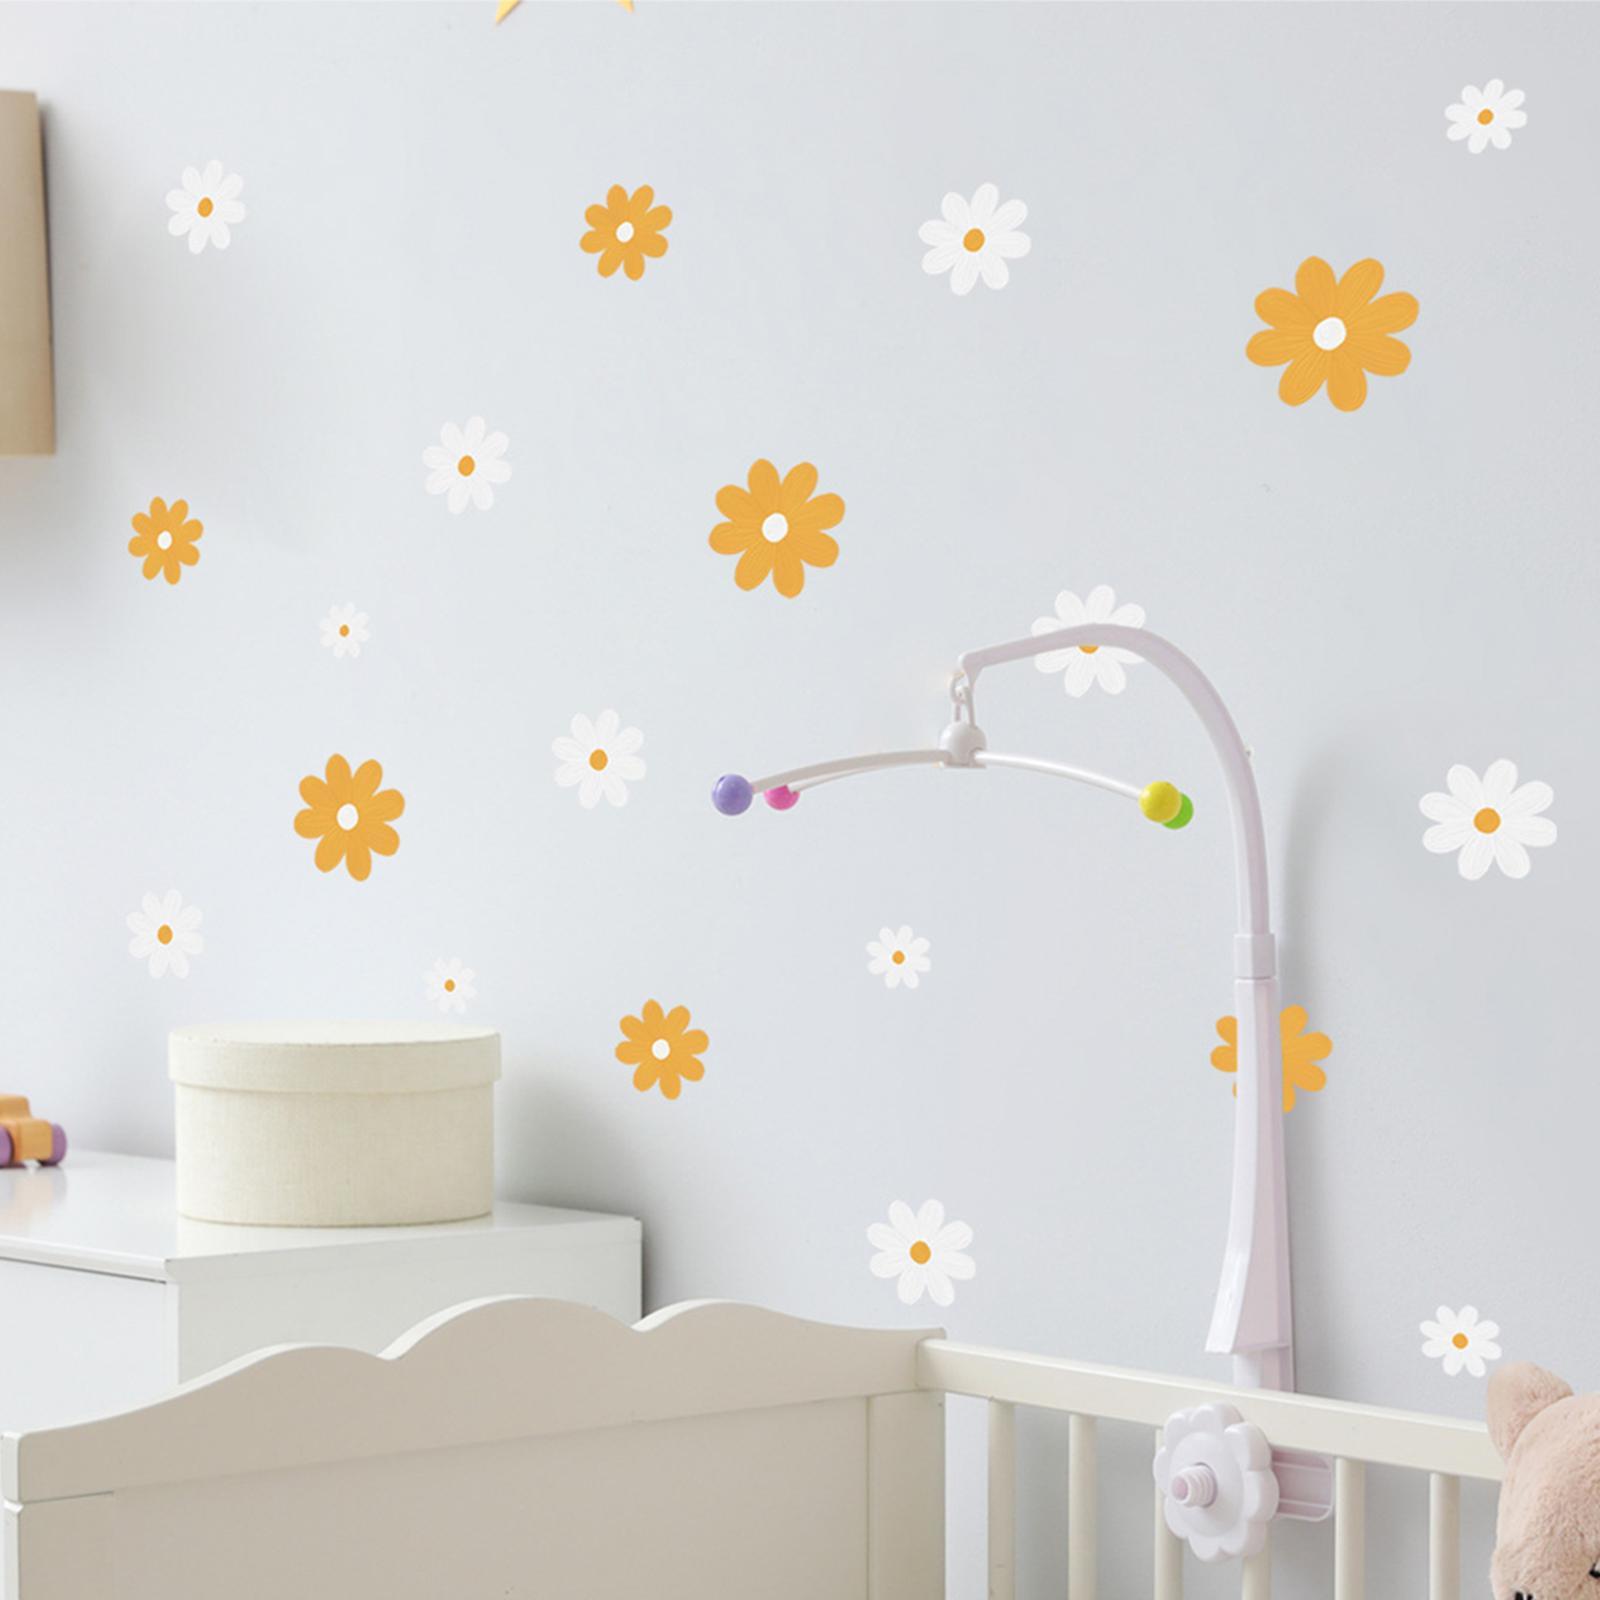 Daisy Floral Wall Stickers Boho Decorative for Sofa Backdrop Wall Art Decor